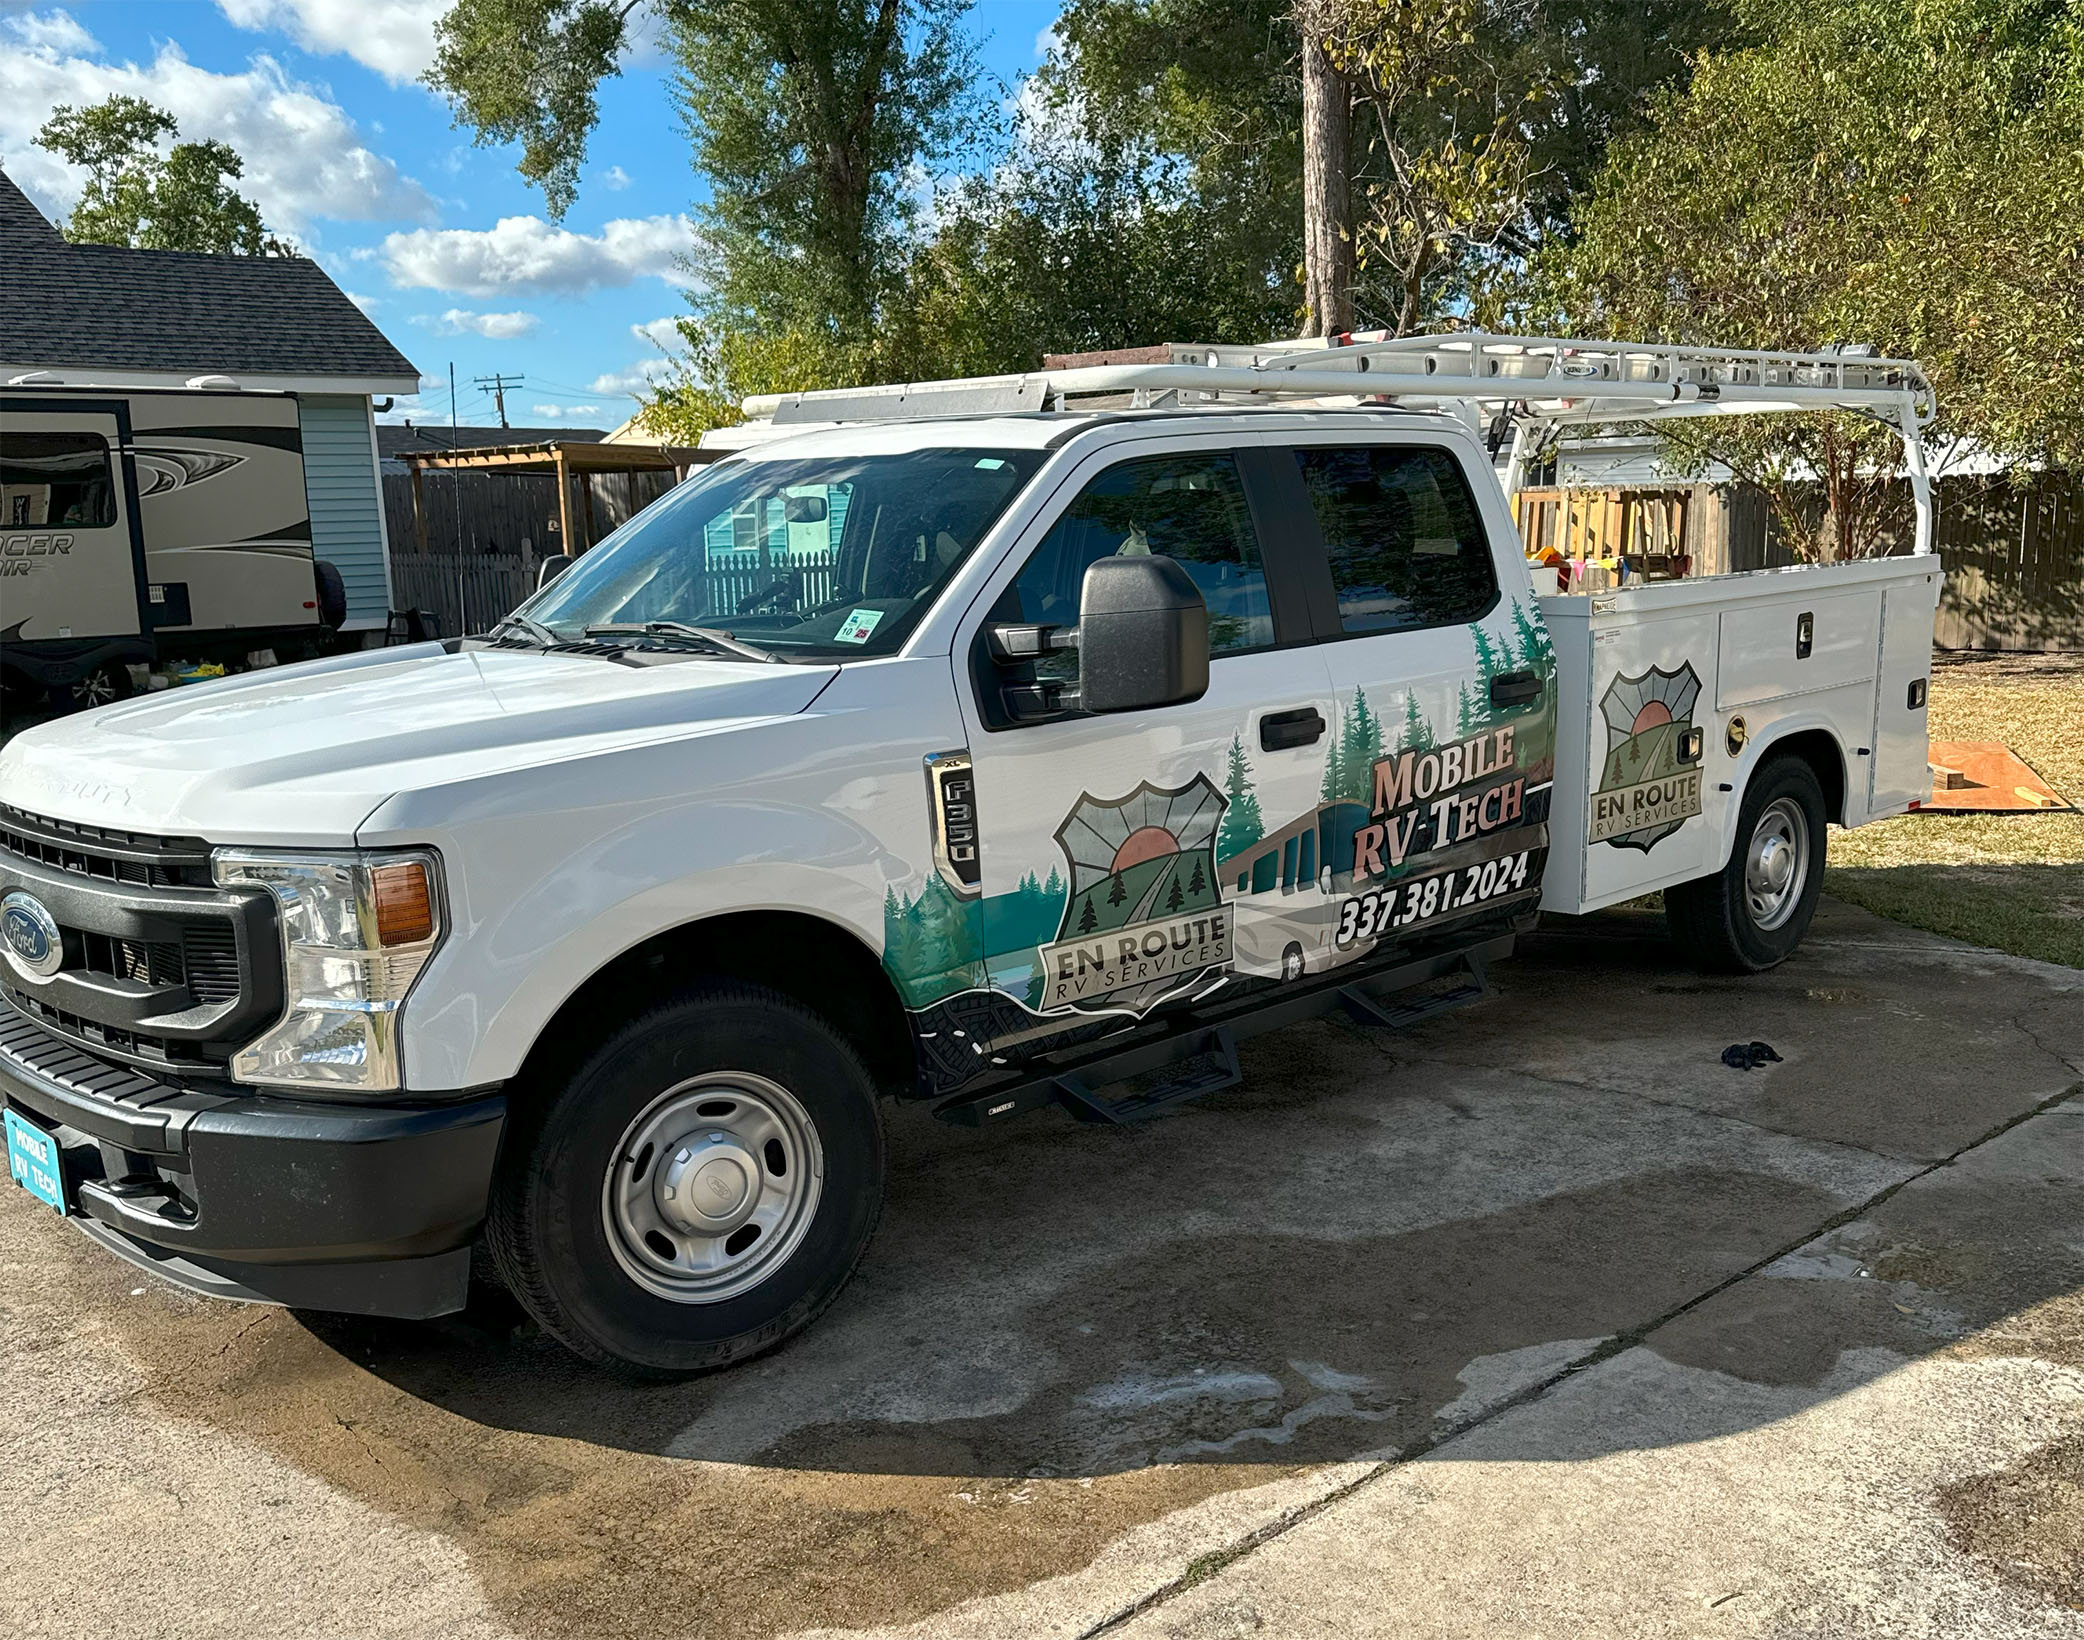 mobile rv repair truck